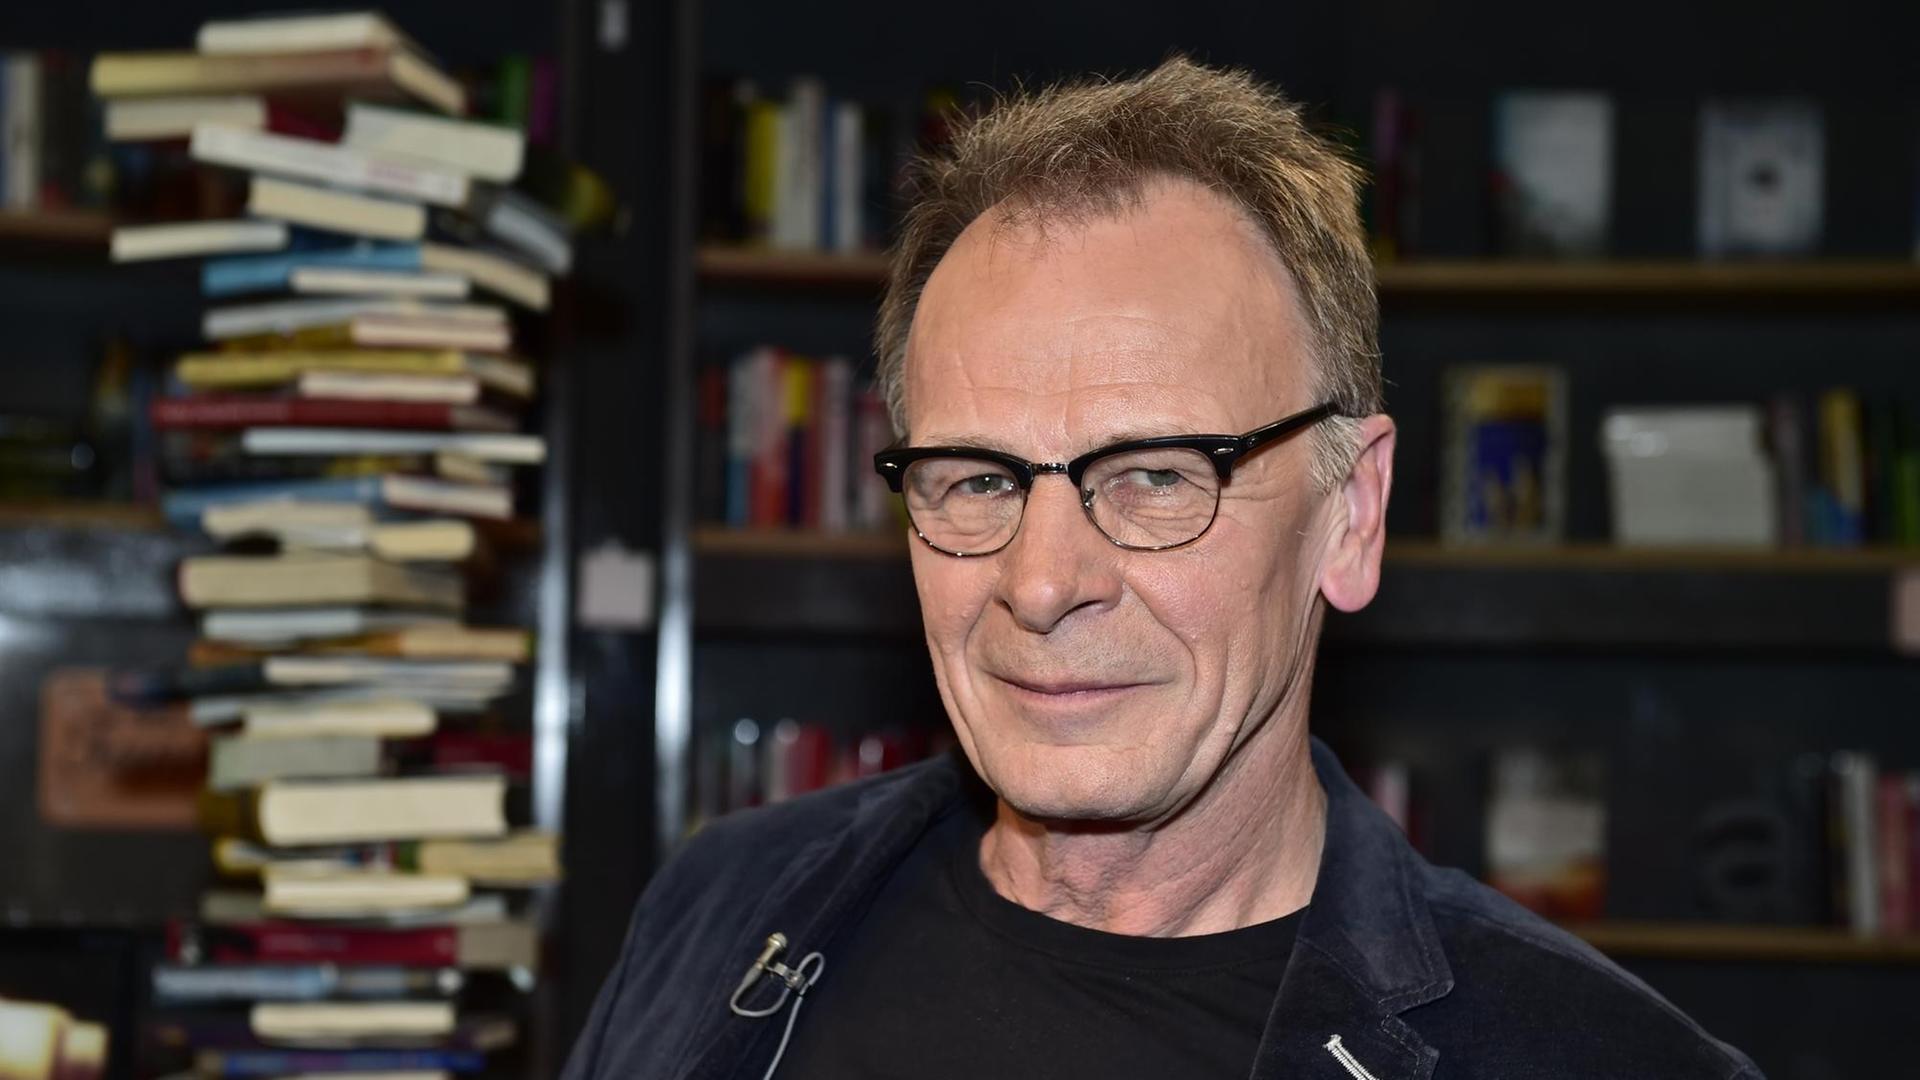 Josef Haslinger abgebildet vor übereinander gestapelten Büchern und einem vollen Bücherregal. Er trägt eine Brille.